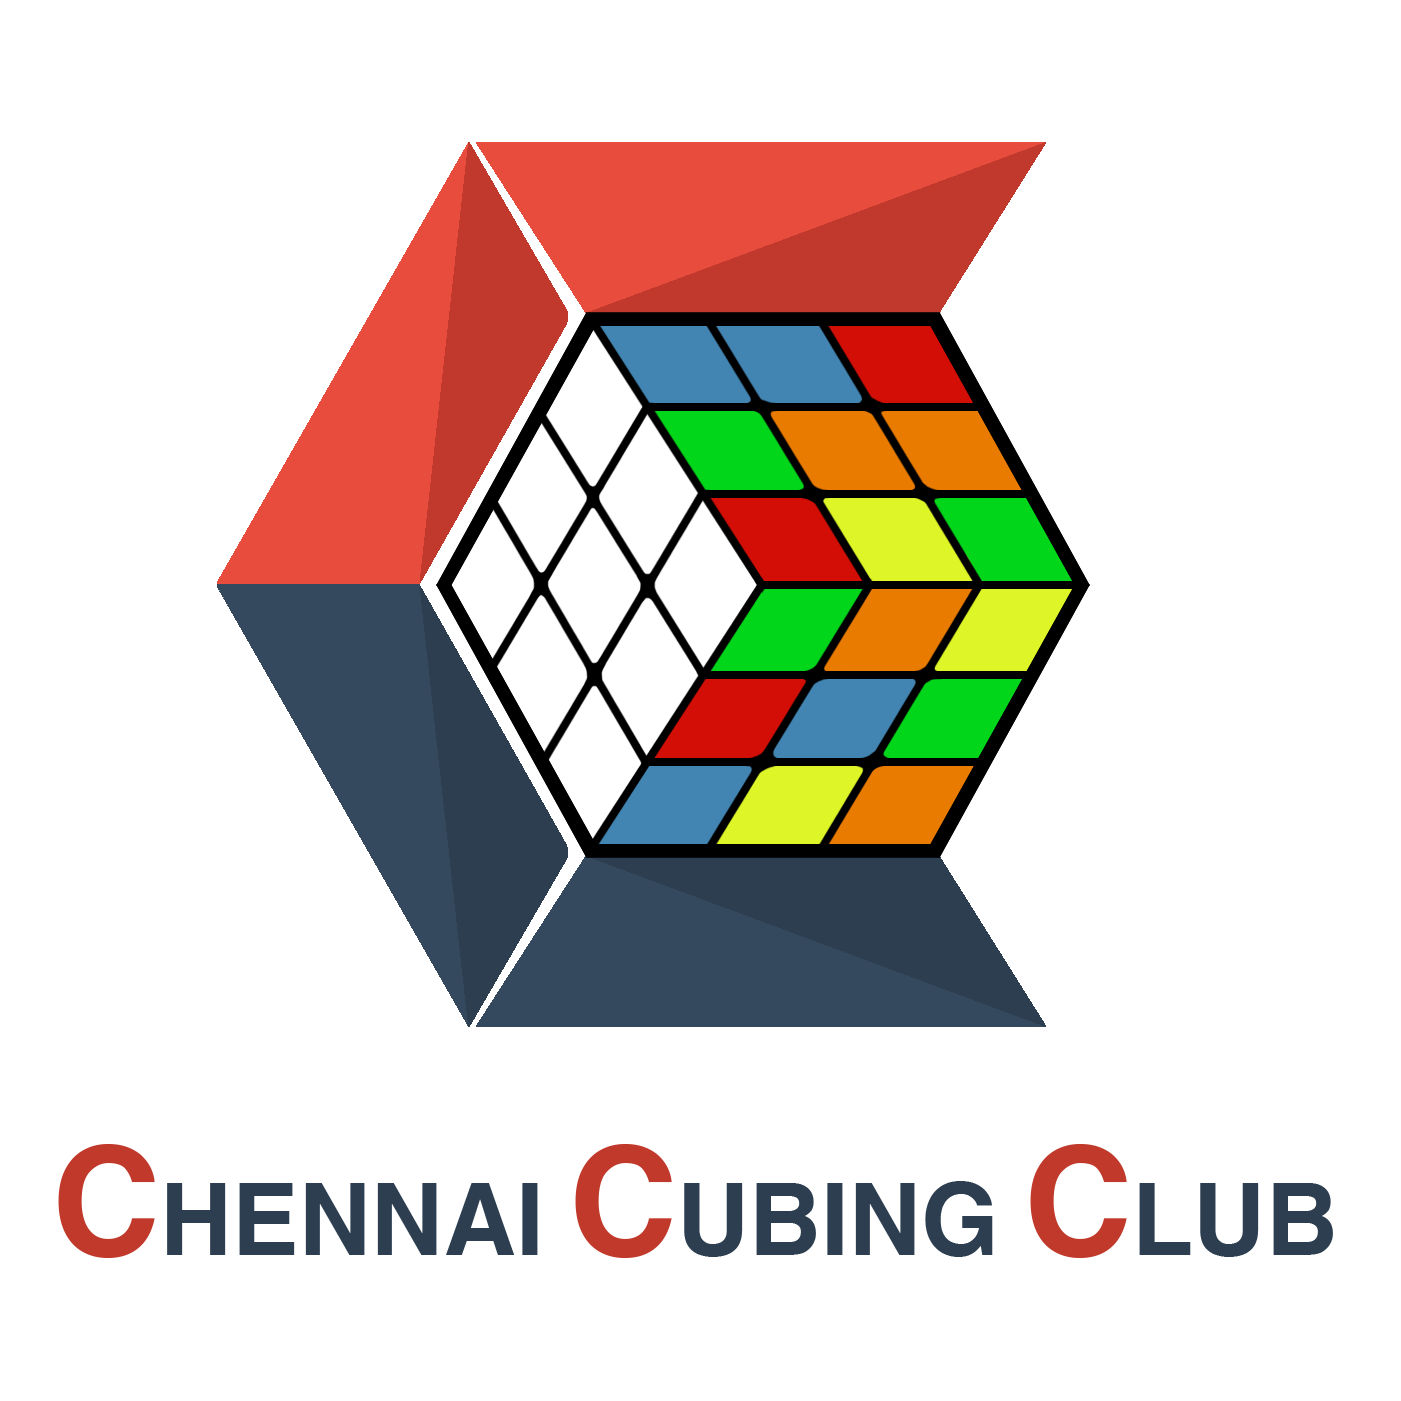 Chennai Cubing Club logo